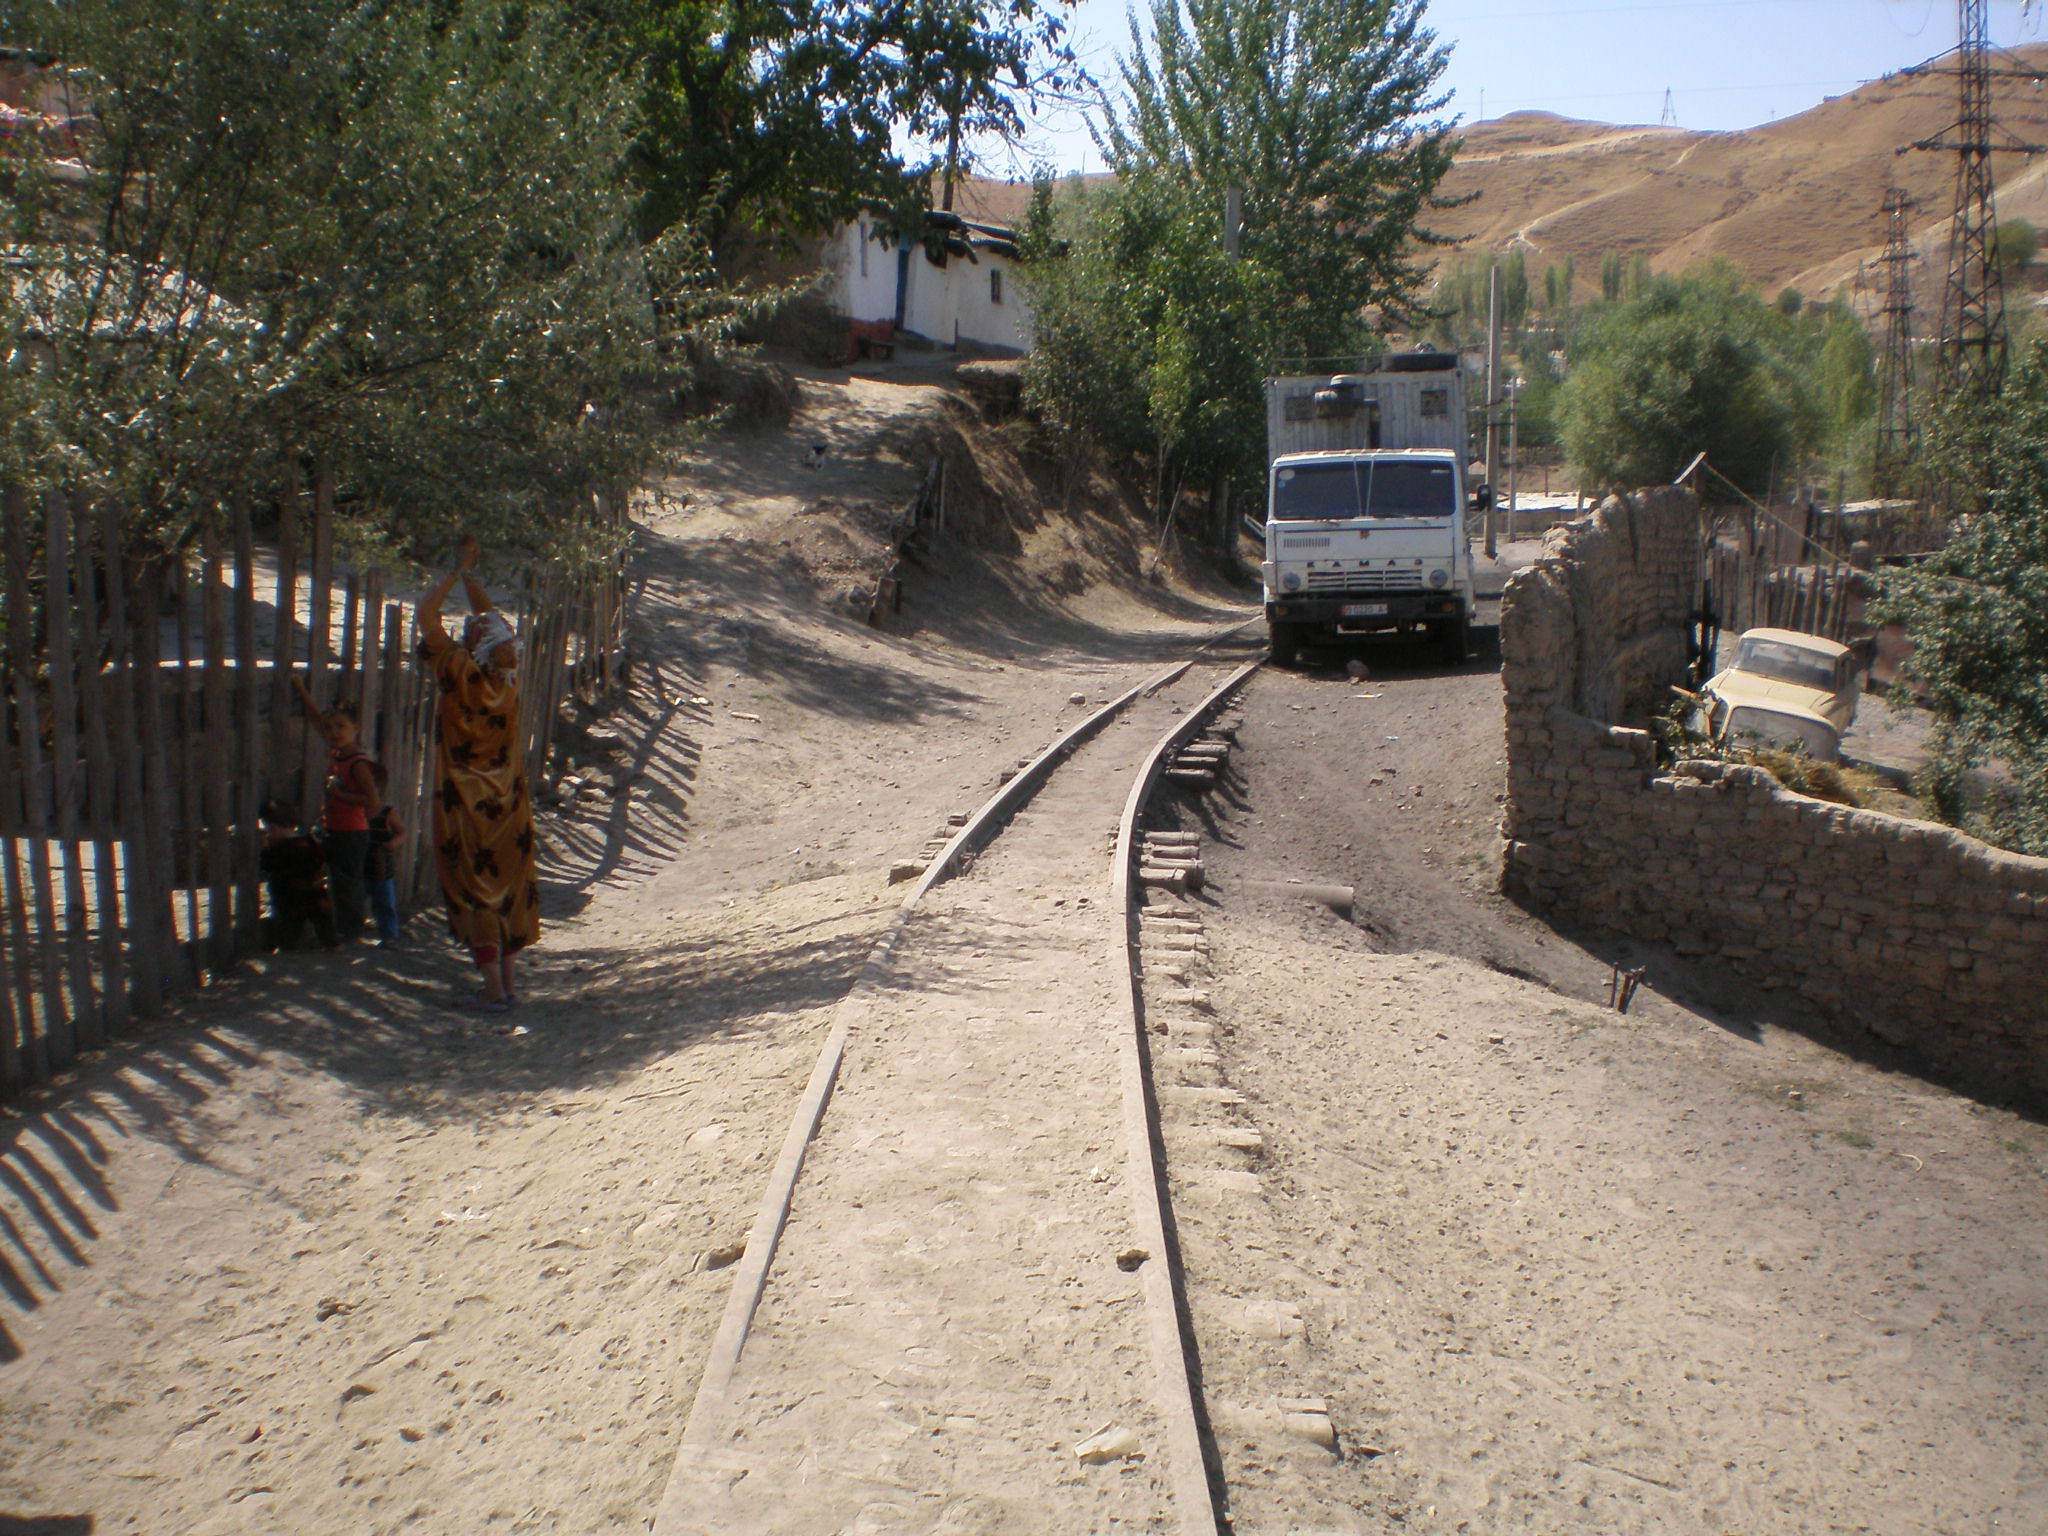 Сулюктинская узкоколейная железная дорога  —  фотографии, сделанные в 2008 году (часть 58)